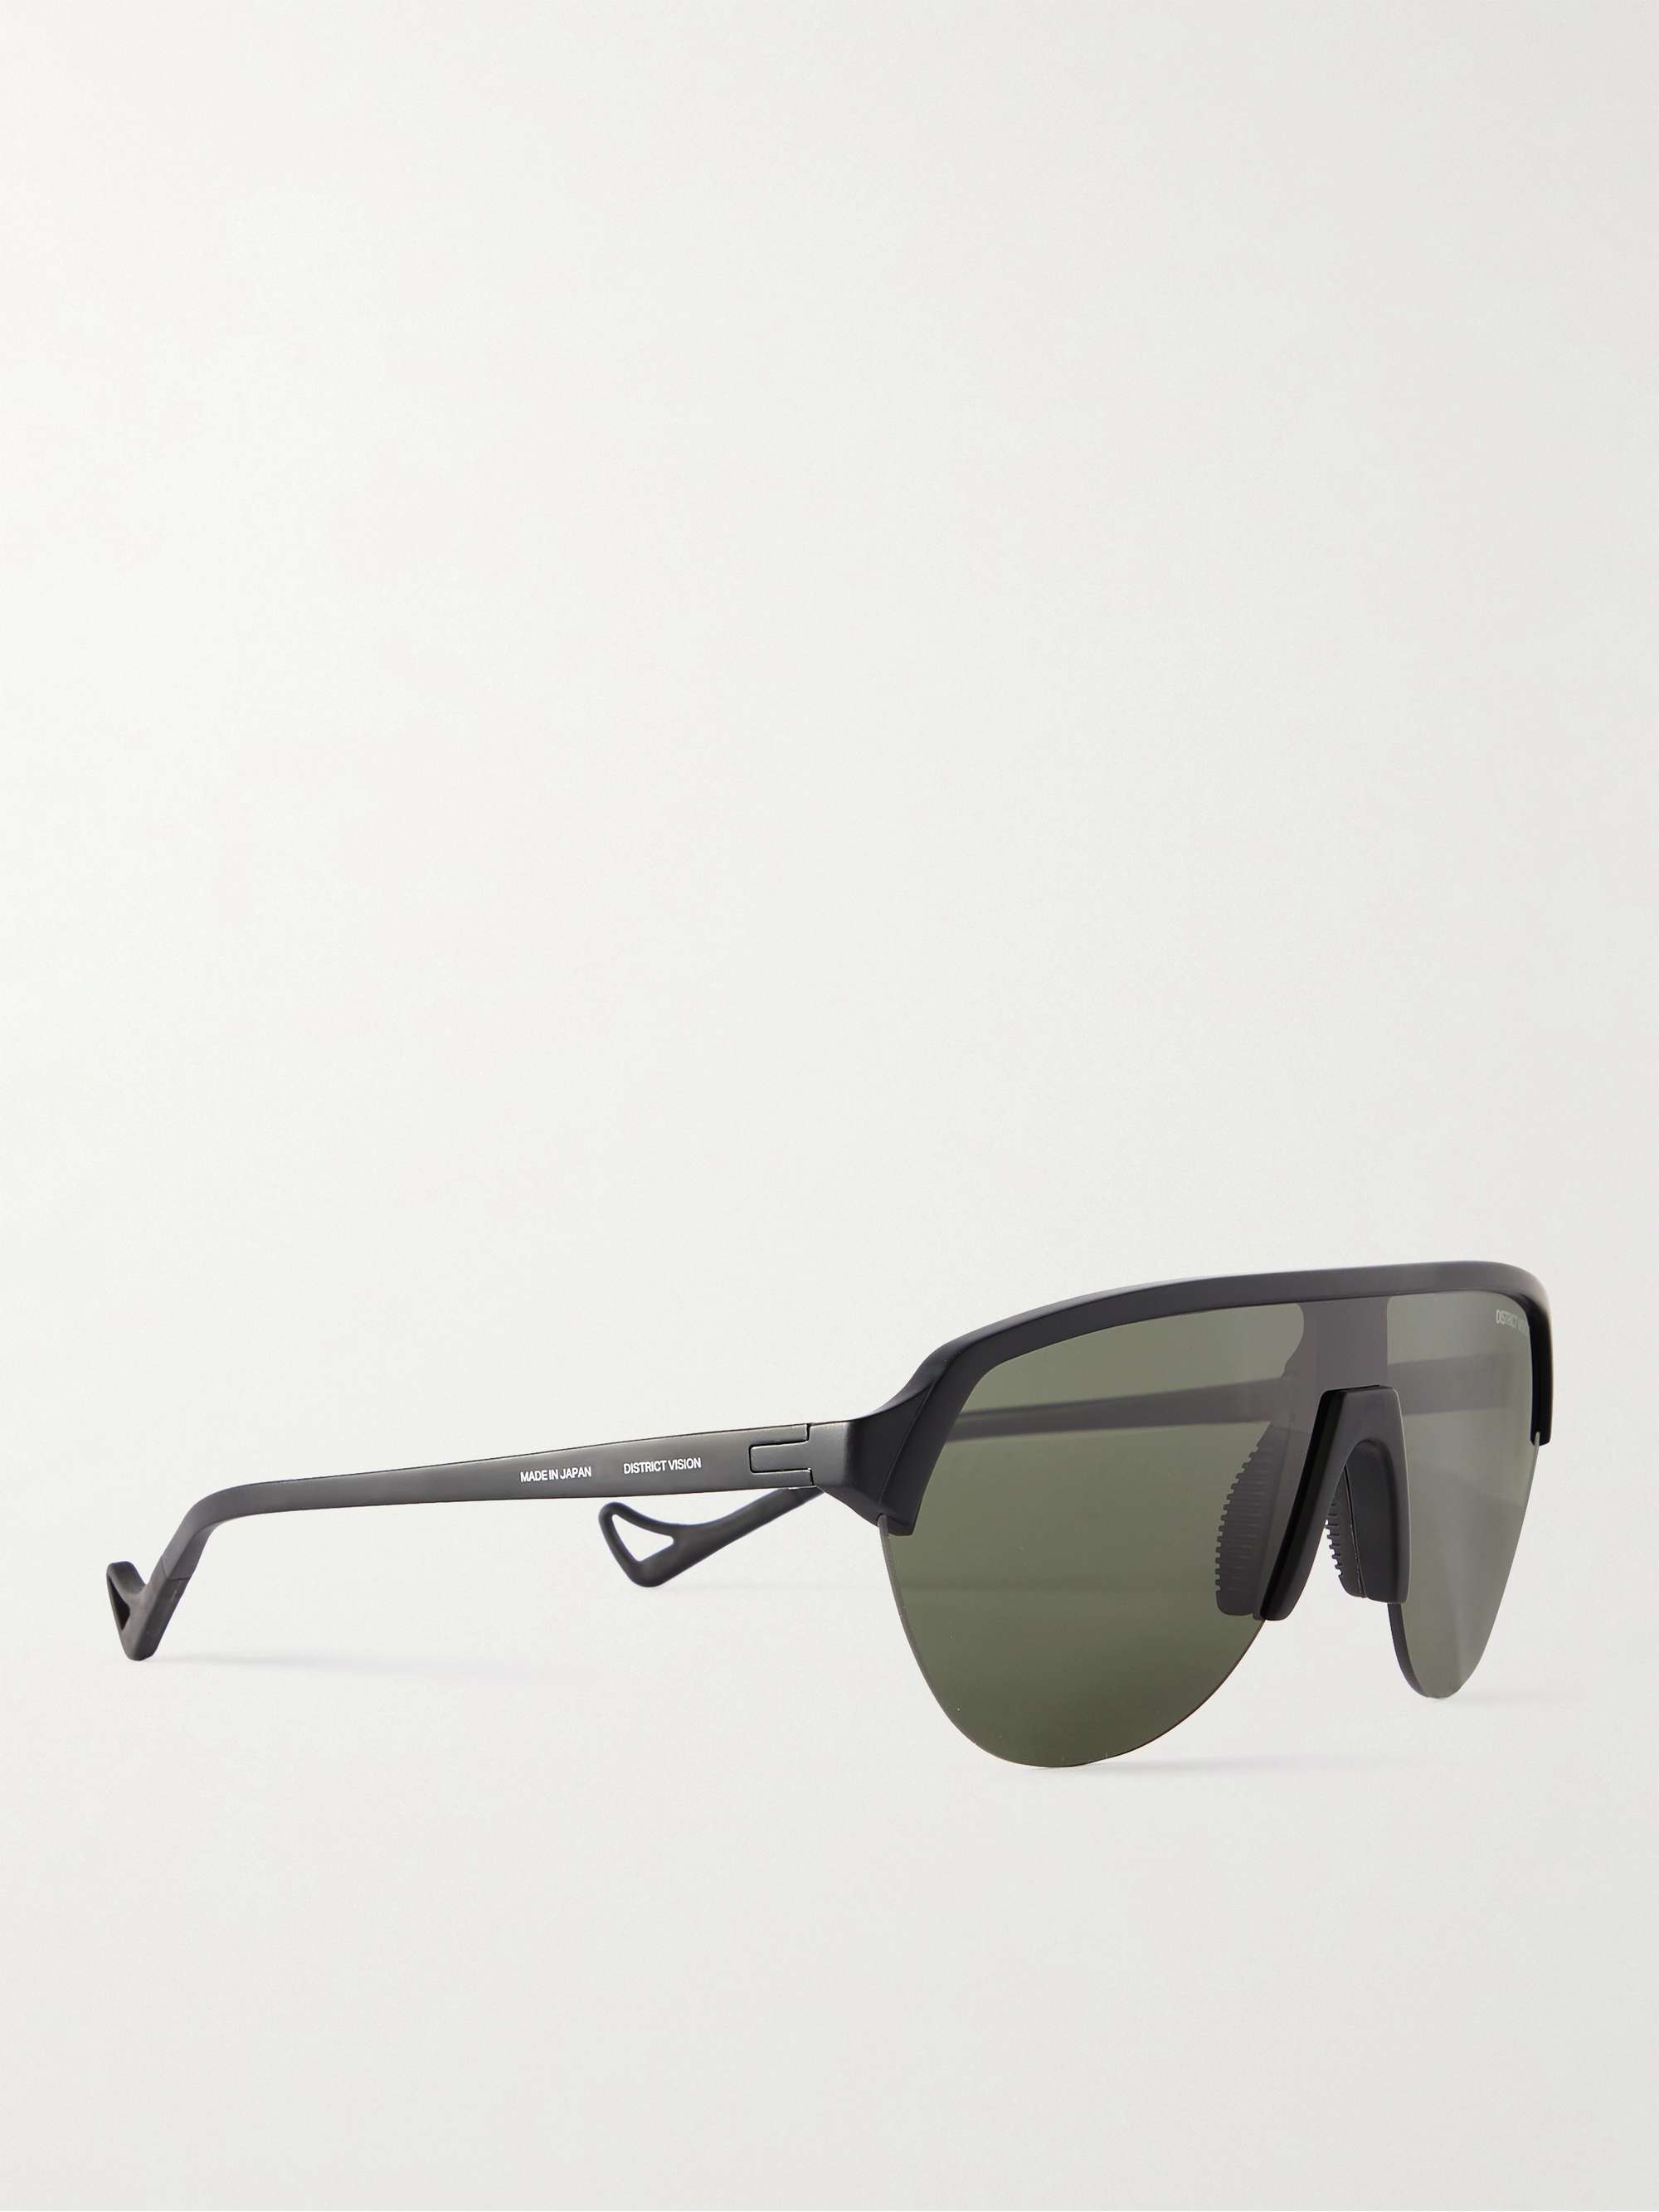 DISTRICT VISION Nagata Speed Blade Nylon and Titanium Polarised Sunglasses